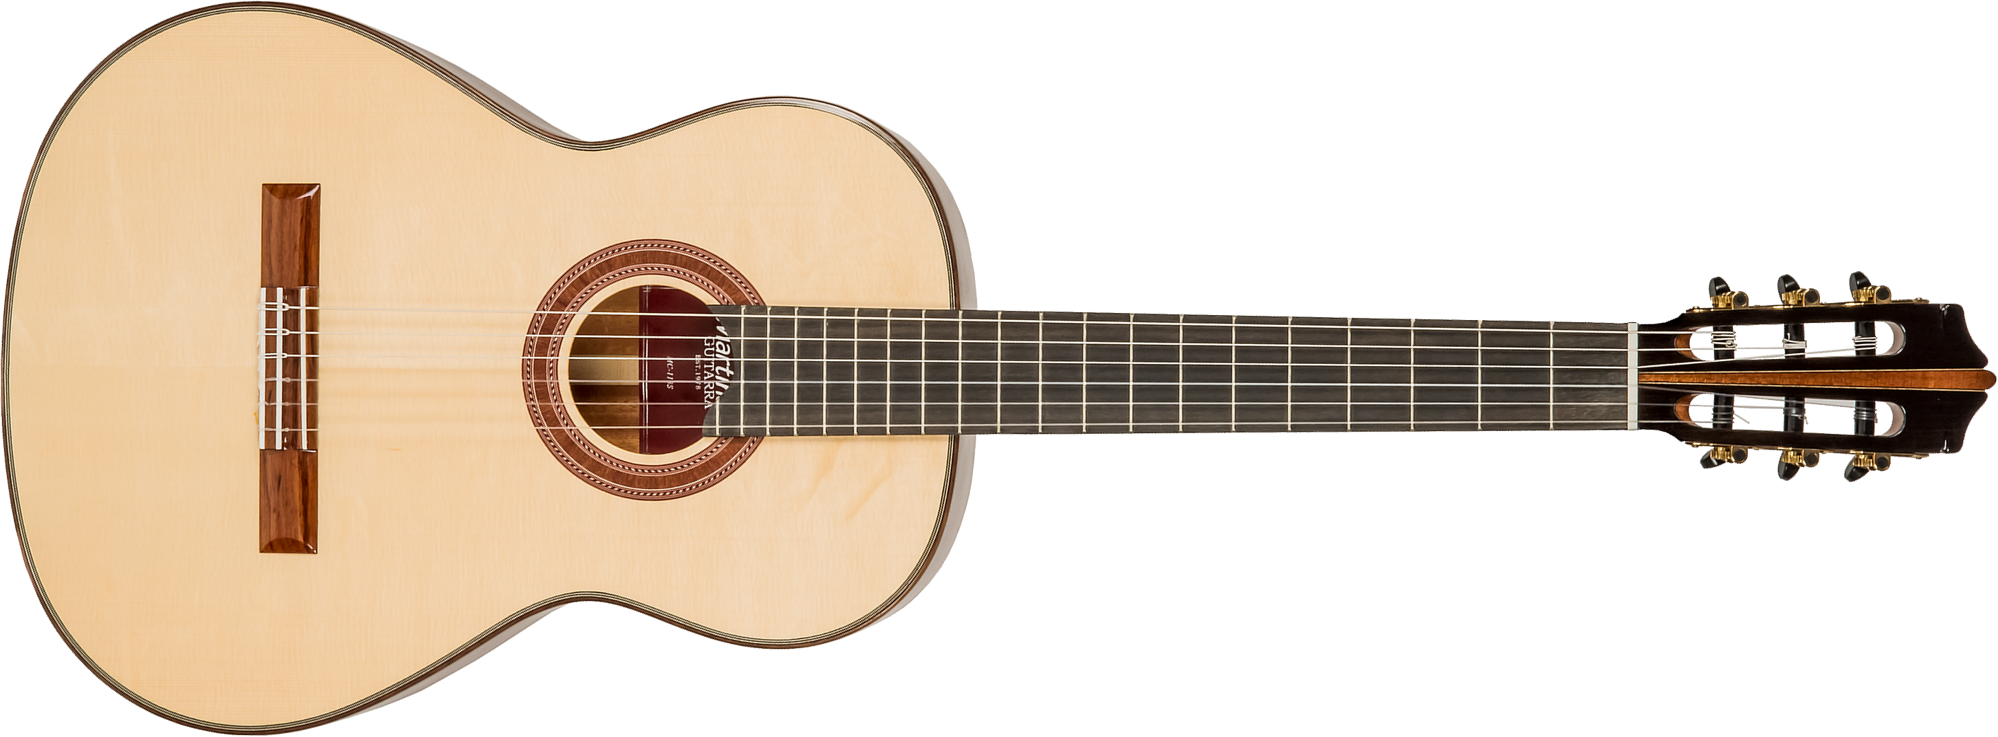 Martinez Mcg 118s Standard 4/4 Epicea Acajou Eb +housse - Natural - Guitare Classique Format 4/4 - Main picture